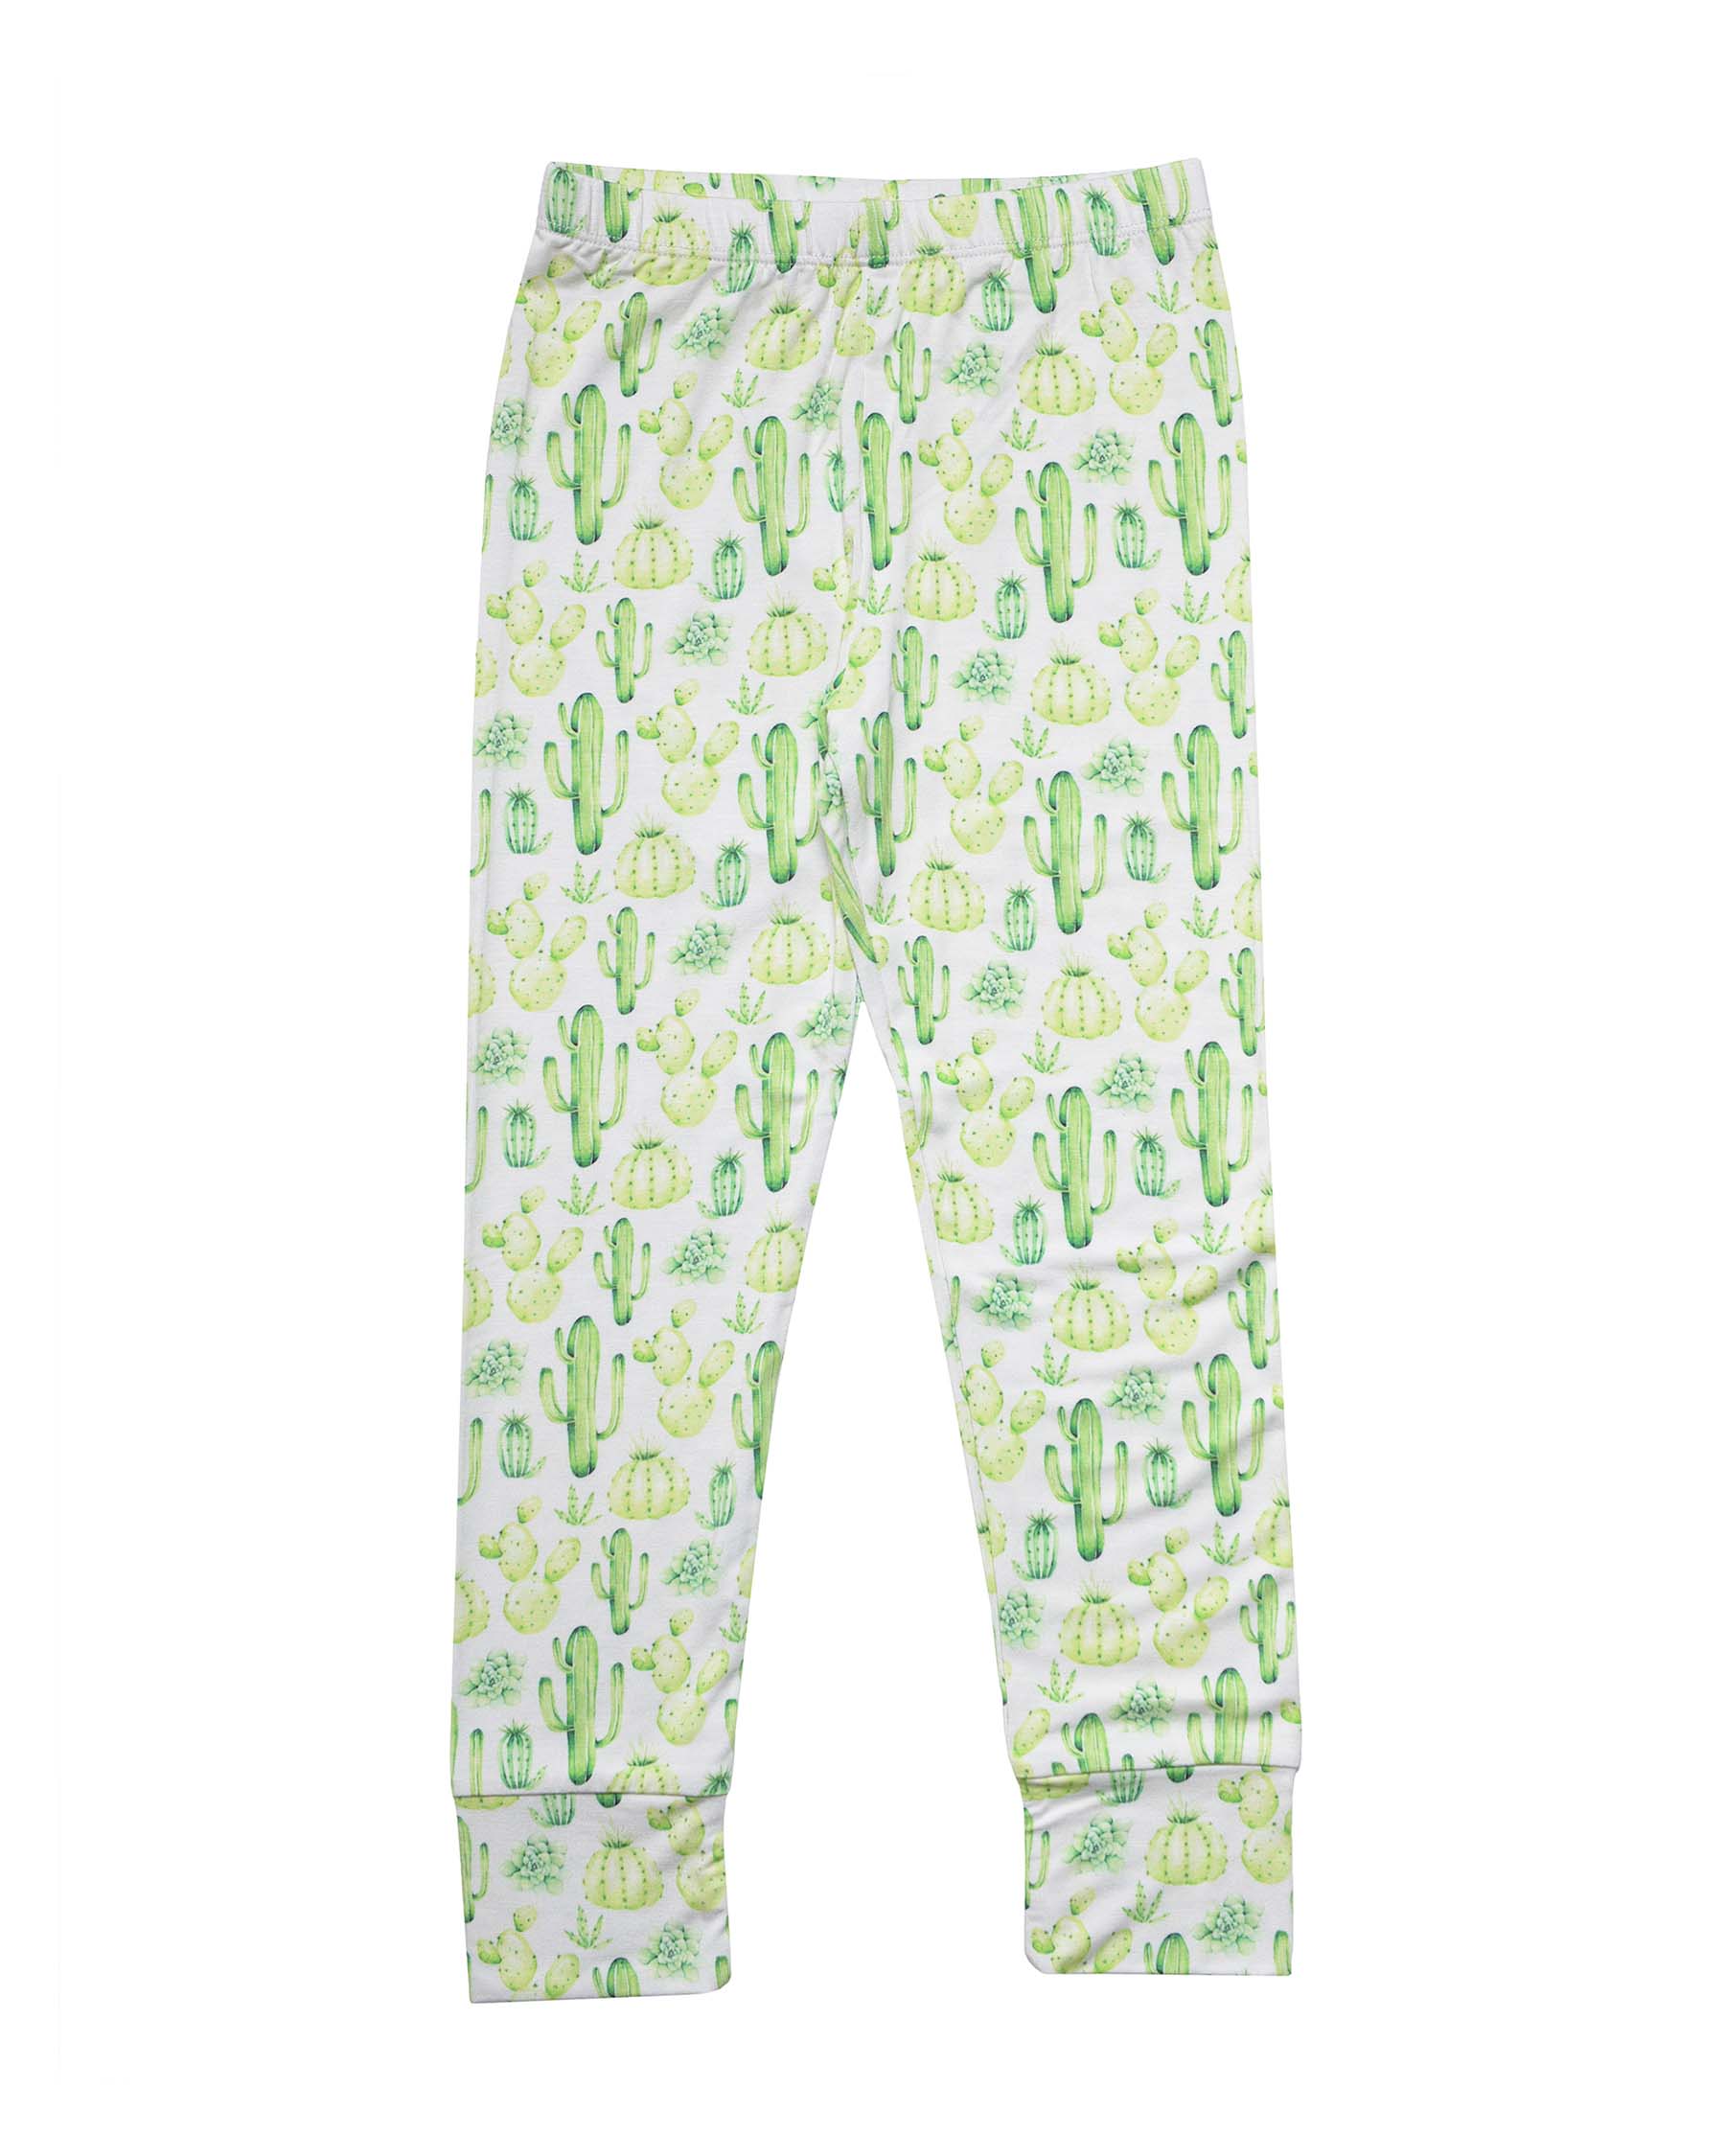 Cactus Pajama Set